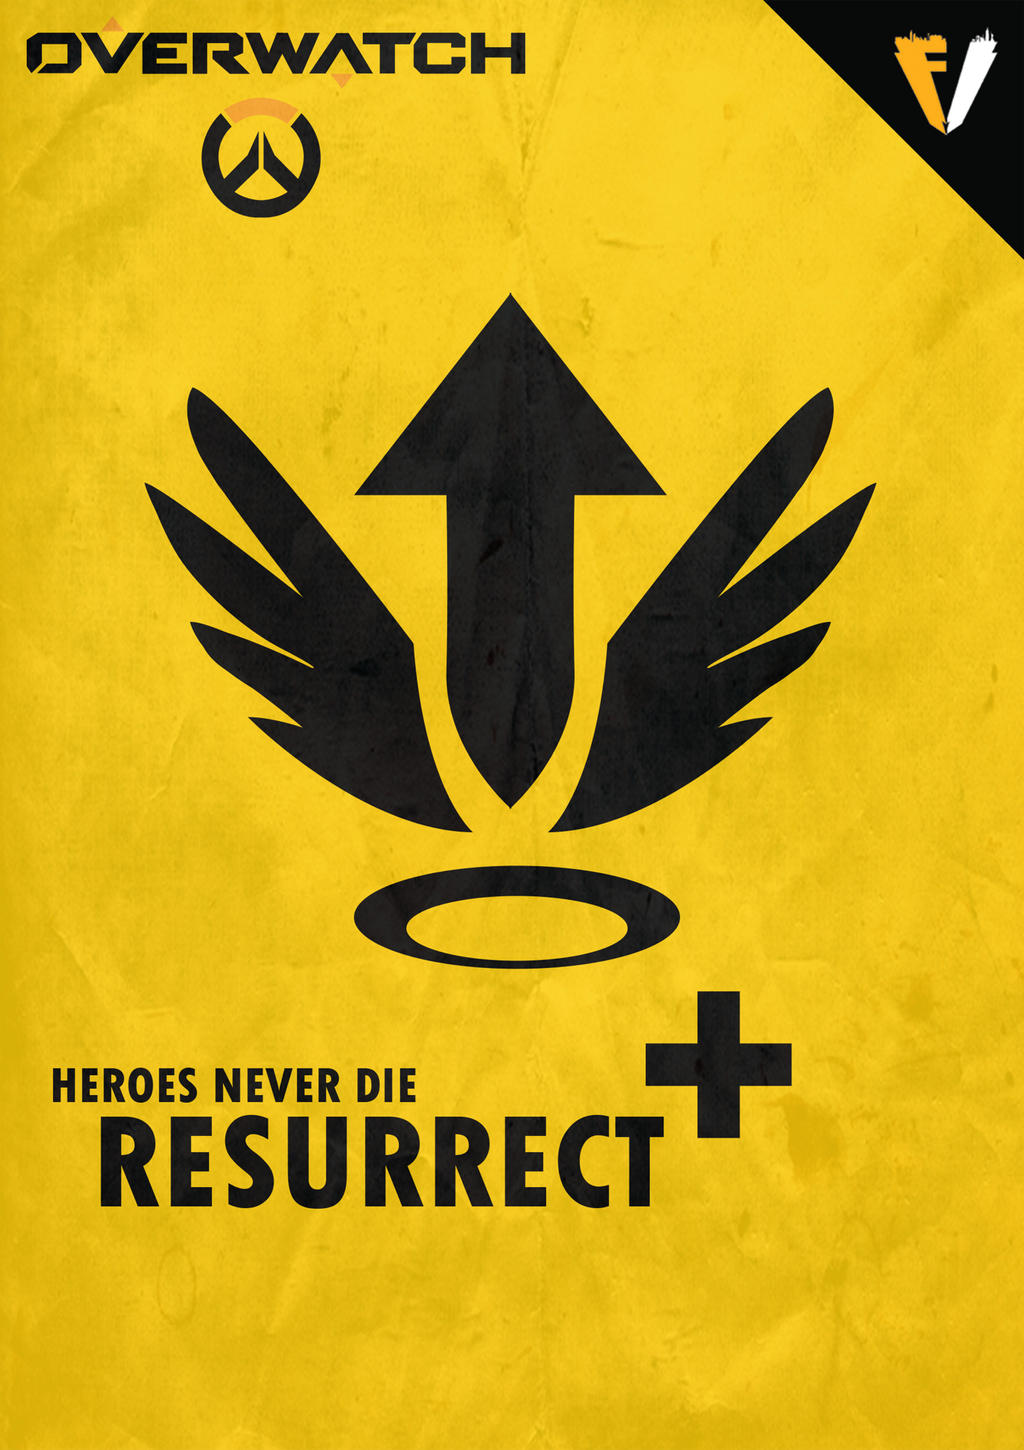 Overwatch Ultimate | Mercy | Resurrect